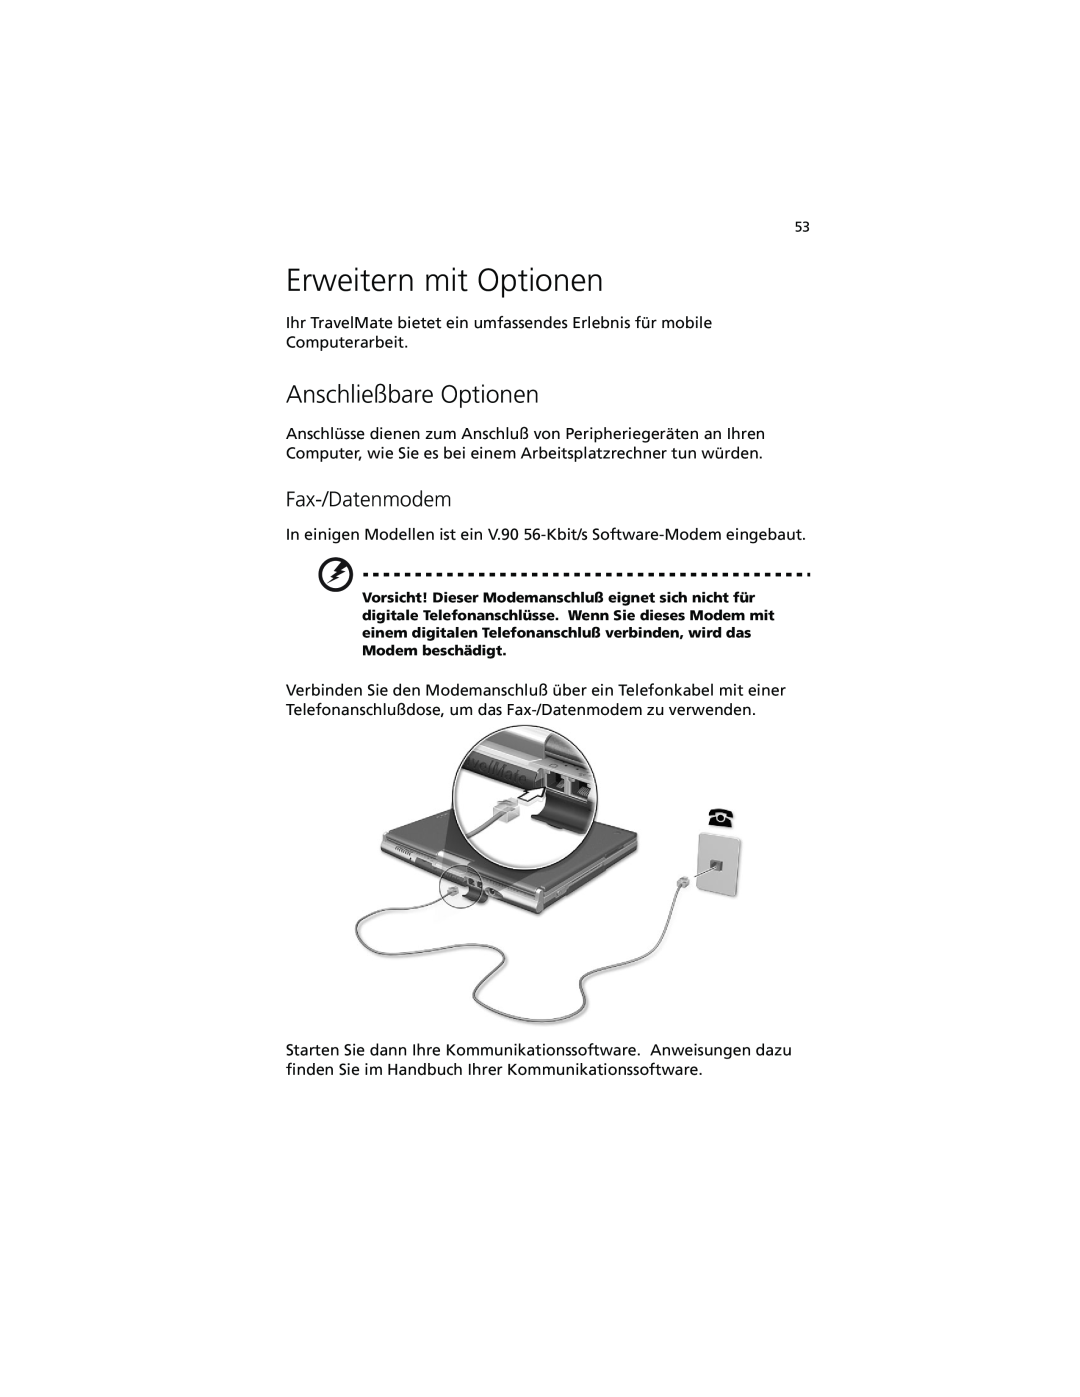 Acer C100-Series manual Erweitern mit Optionen, Anschließbare Optionen, Fax-/Datenmodem 